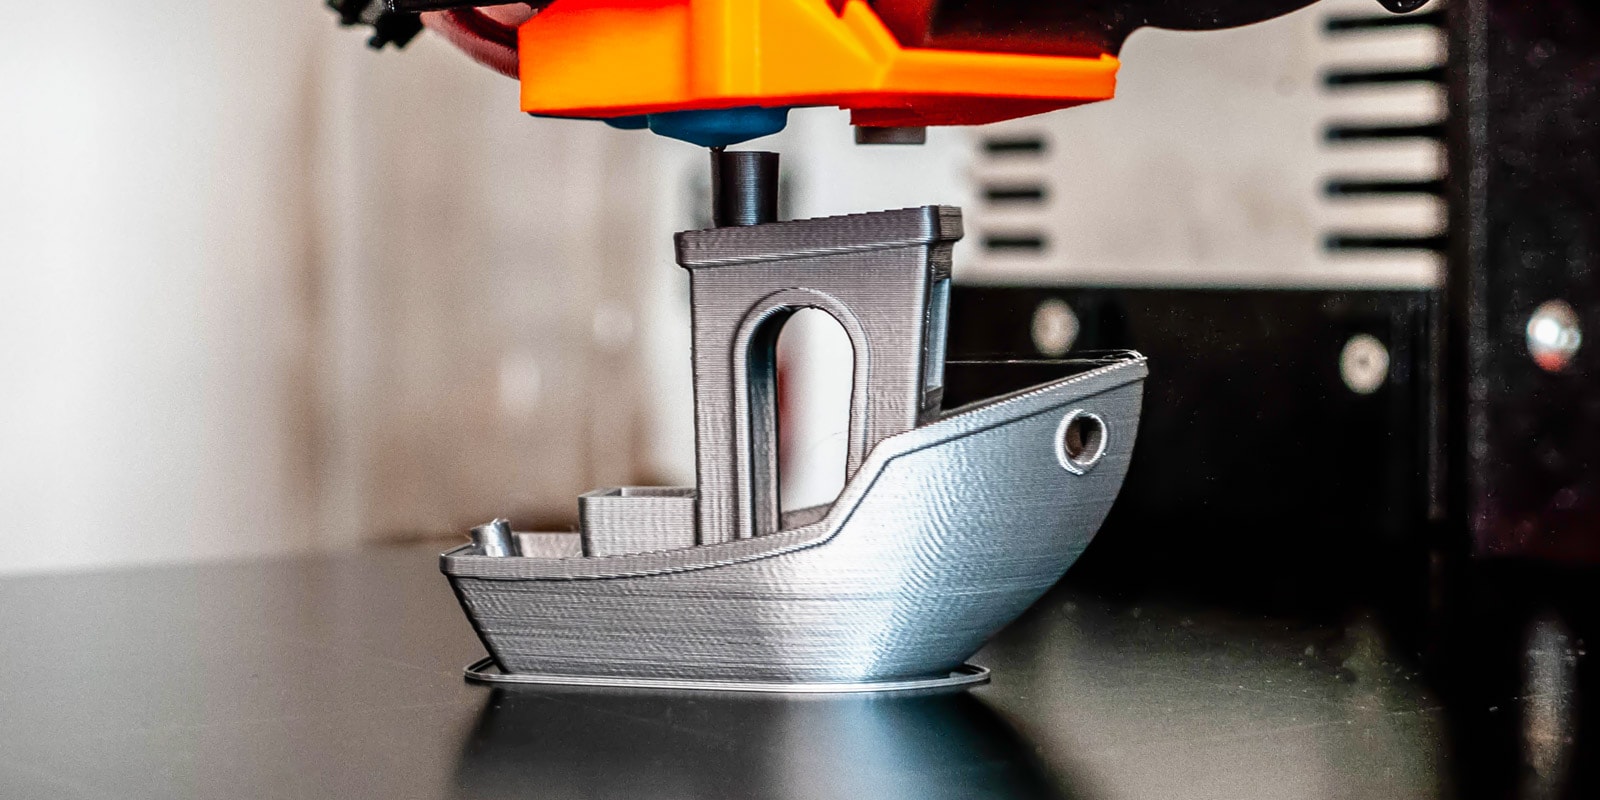 Qui sont les fabricants français d'imprimantes 3D FDM/FFF ? - 3Dnatives